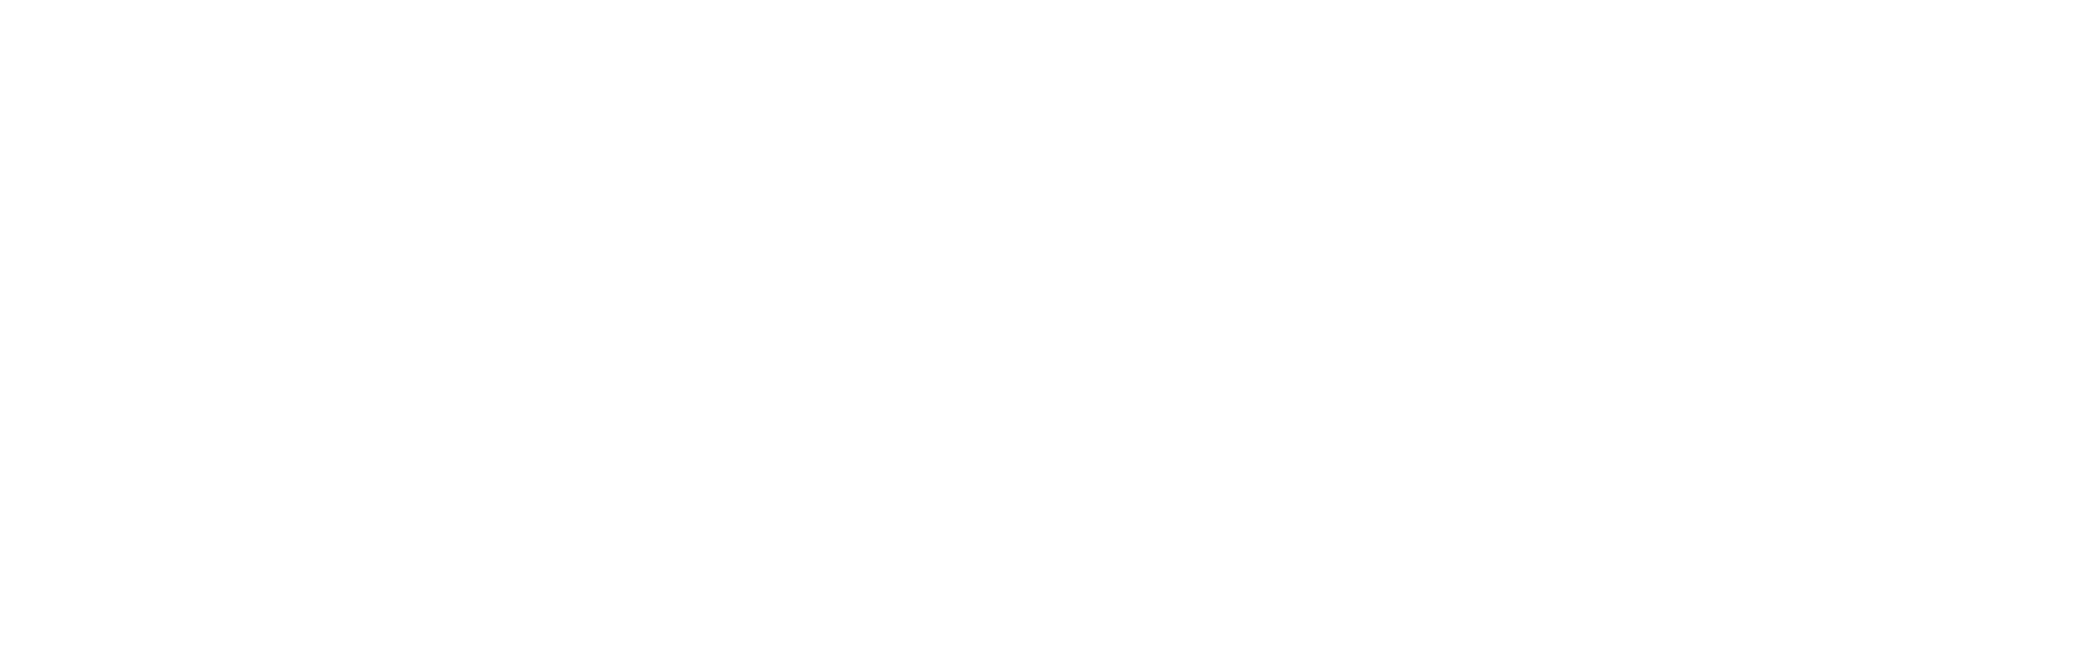 Mulesoft_Logo